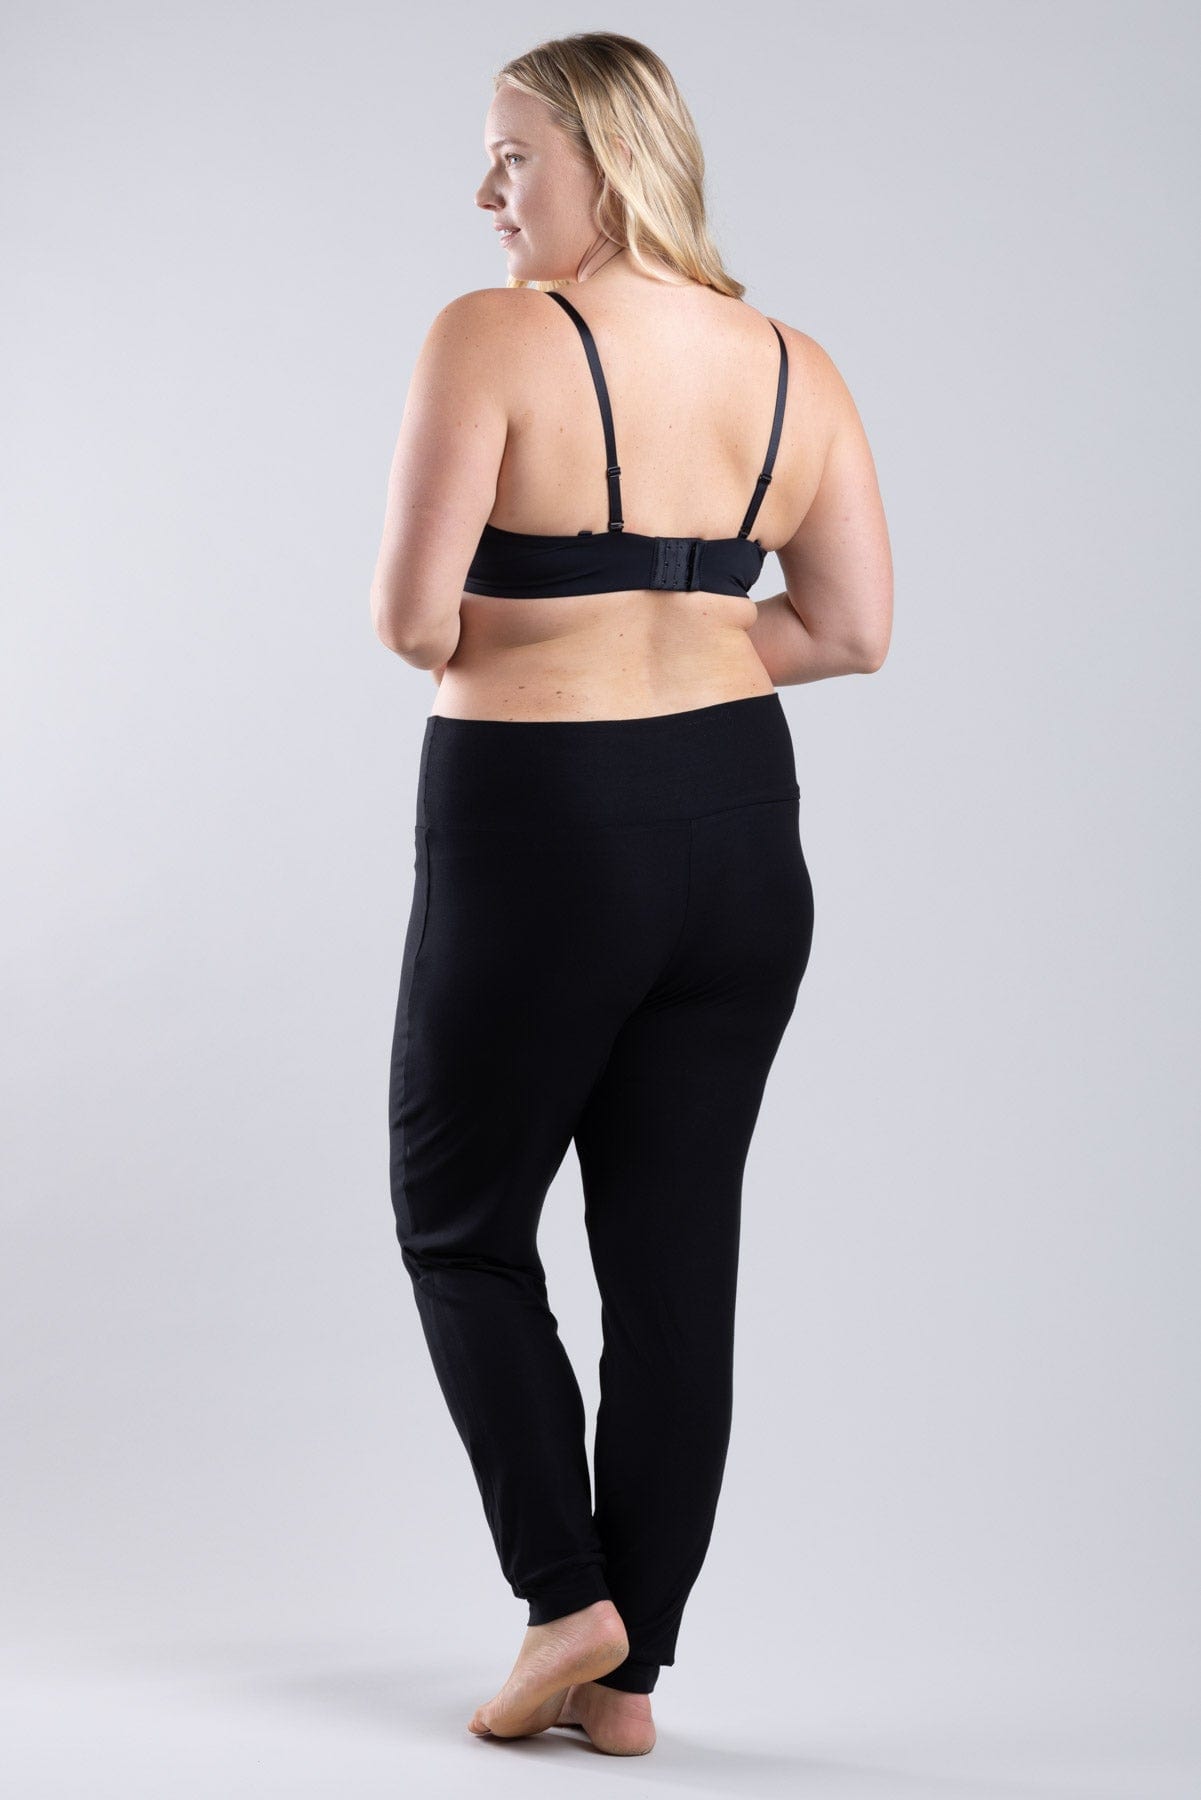 Black sport leggings for women - Dim Sport